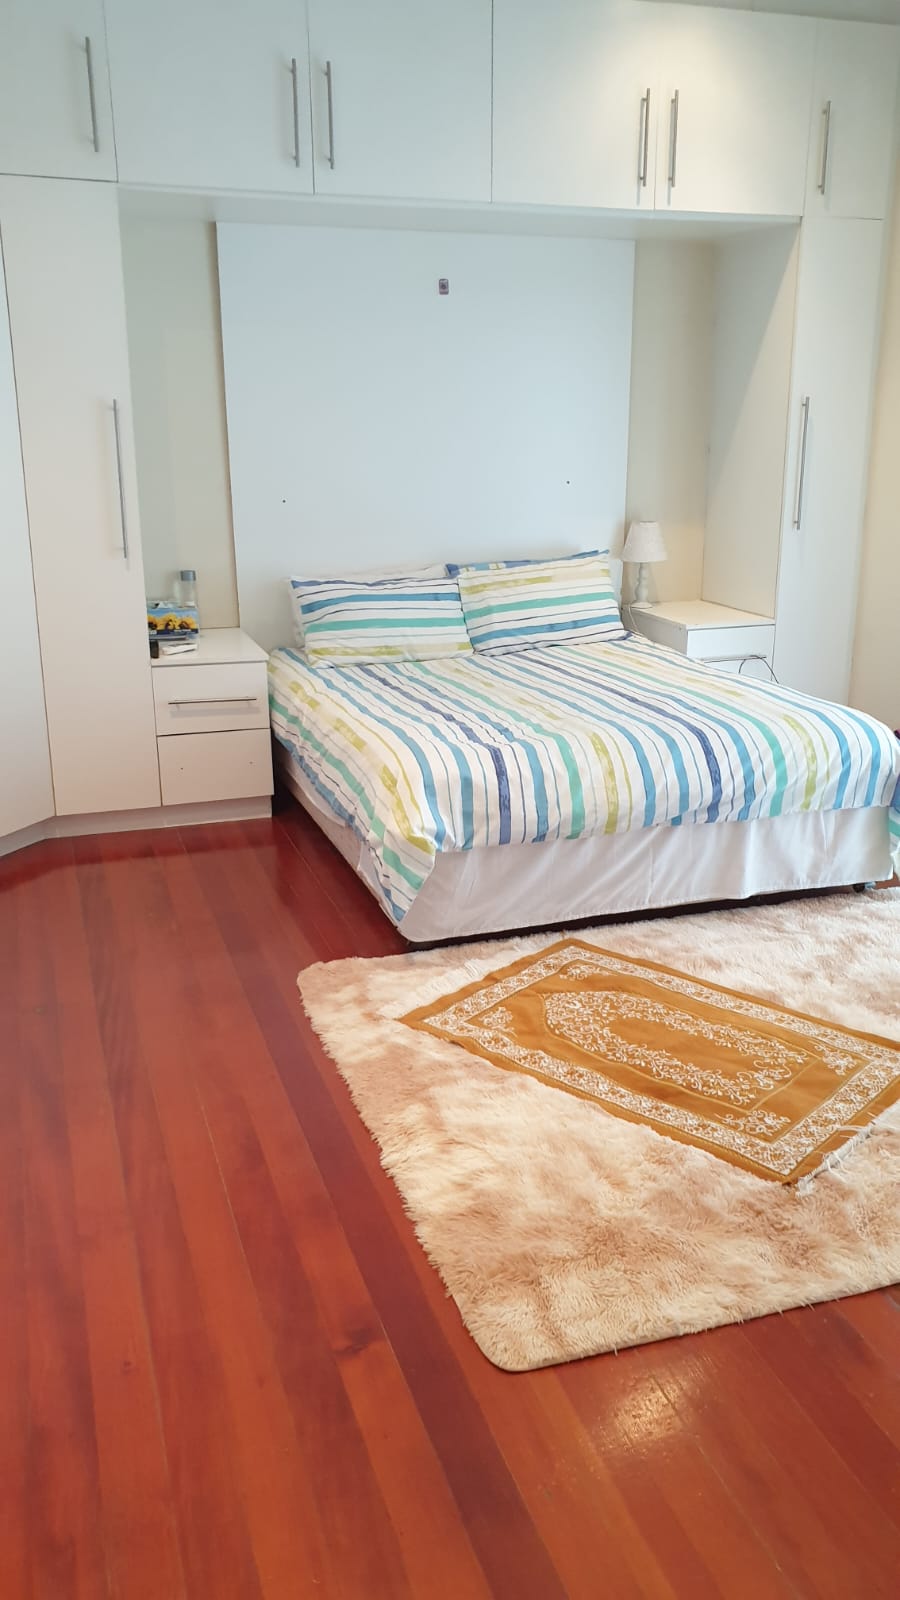 6 Bedroom Property for Sale in Athlone KwaZulu-Natal